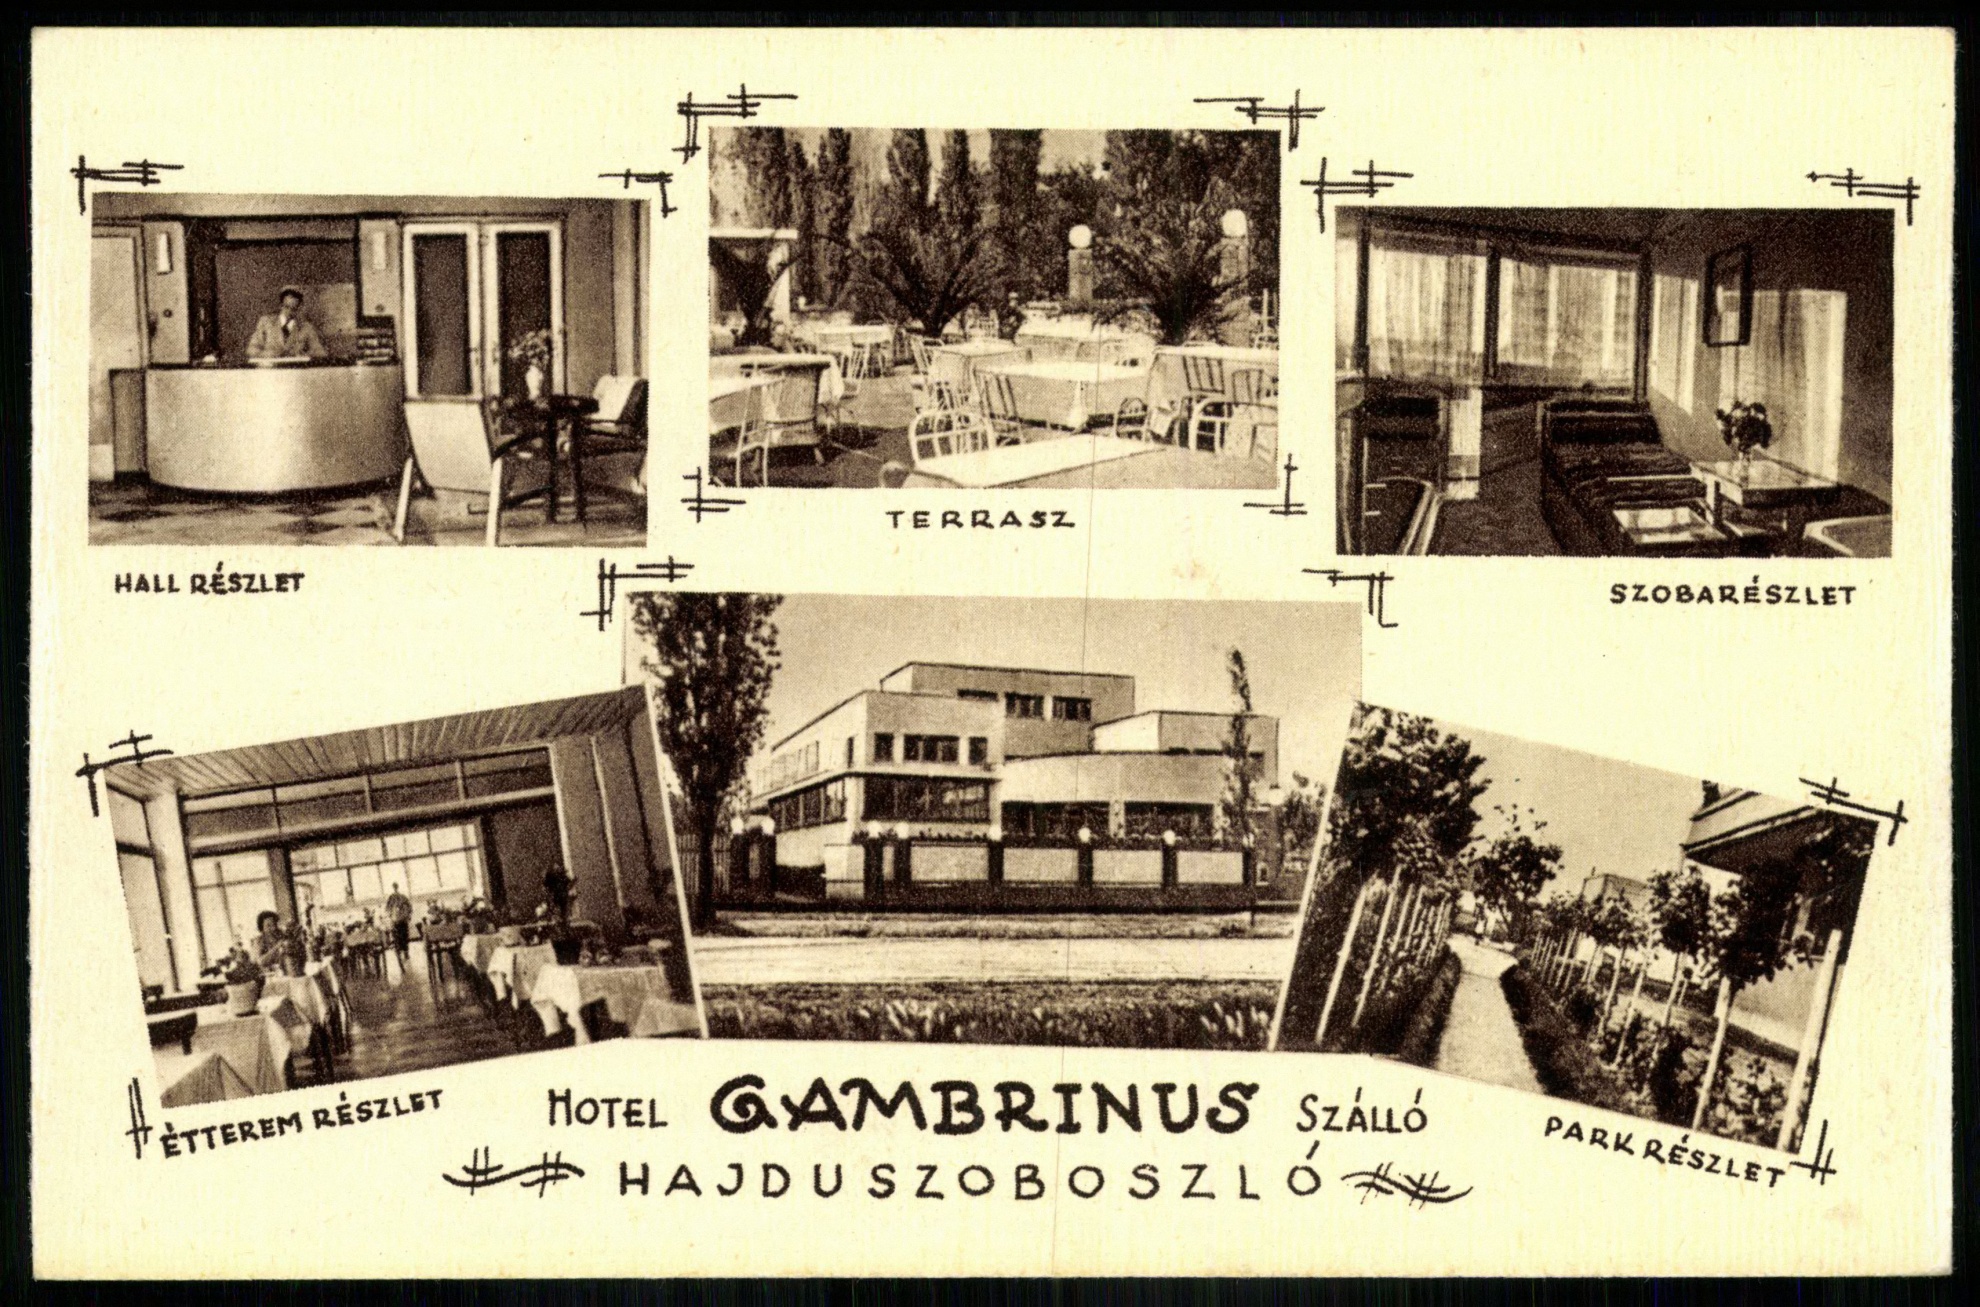 Hajdúszoboszló Gambrinus száll, Hall részlet, Terasz, Szobarészlet, Étterem részlet, Park részlet (Magyar Kereskedelmi és Vendéglátóipari Múzeum CC BY-NC-ND)